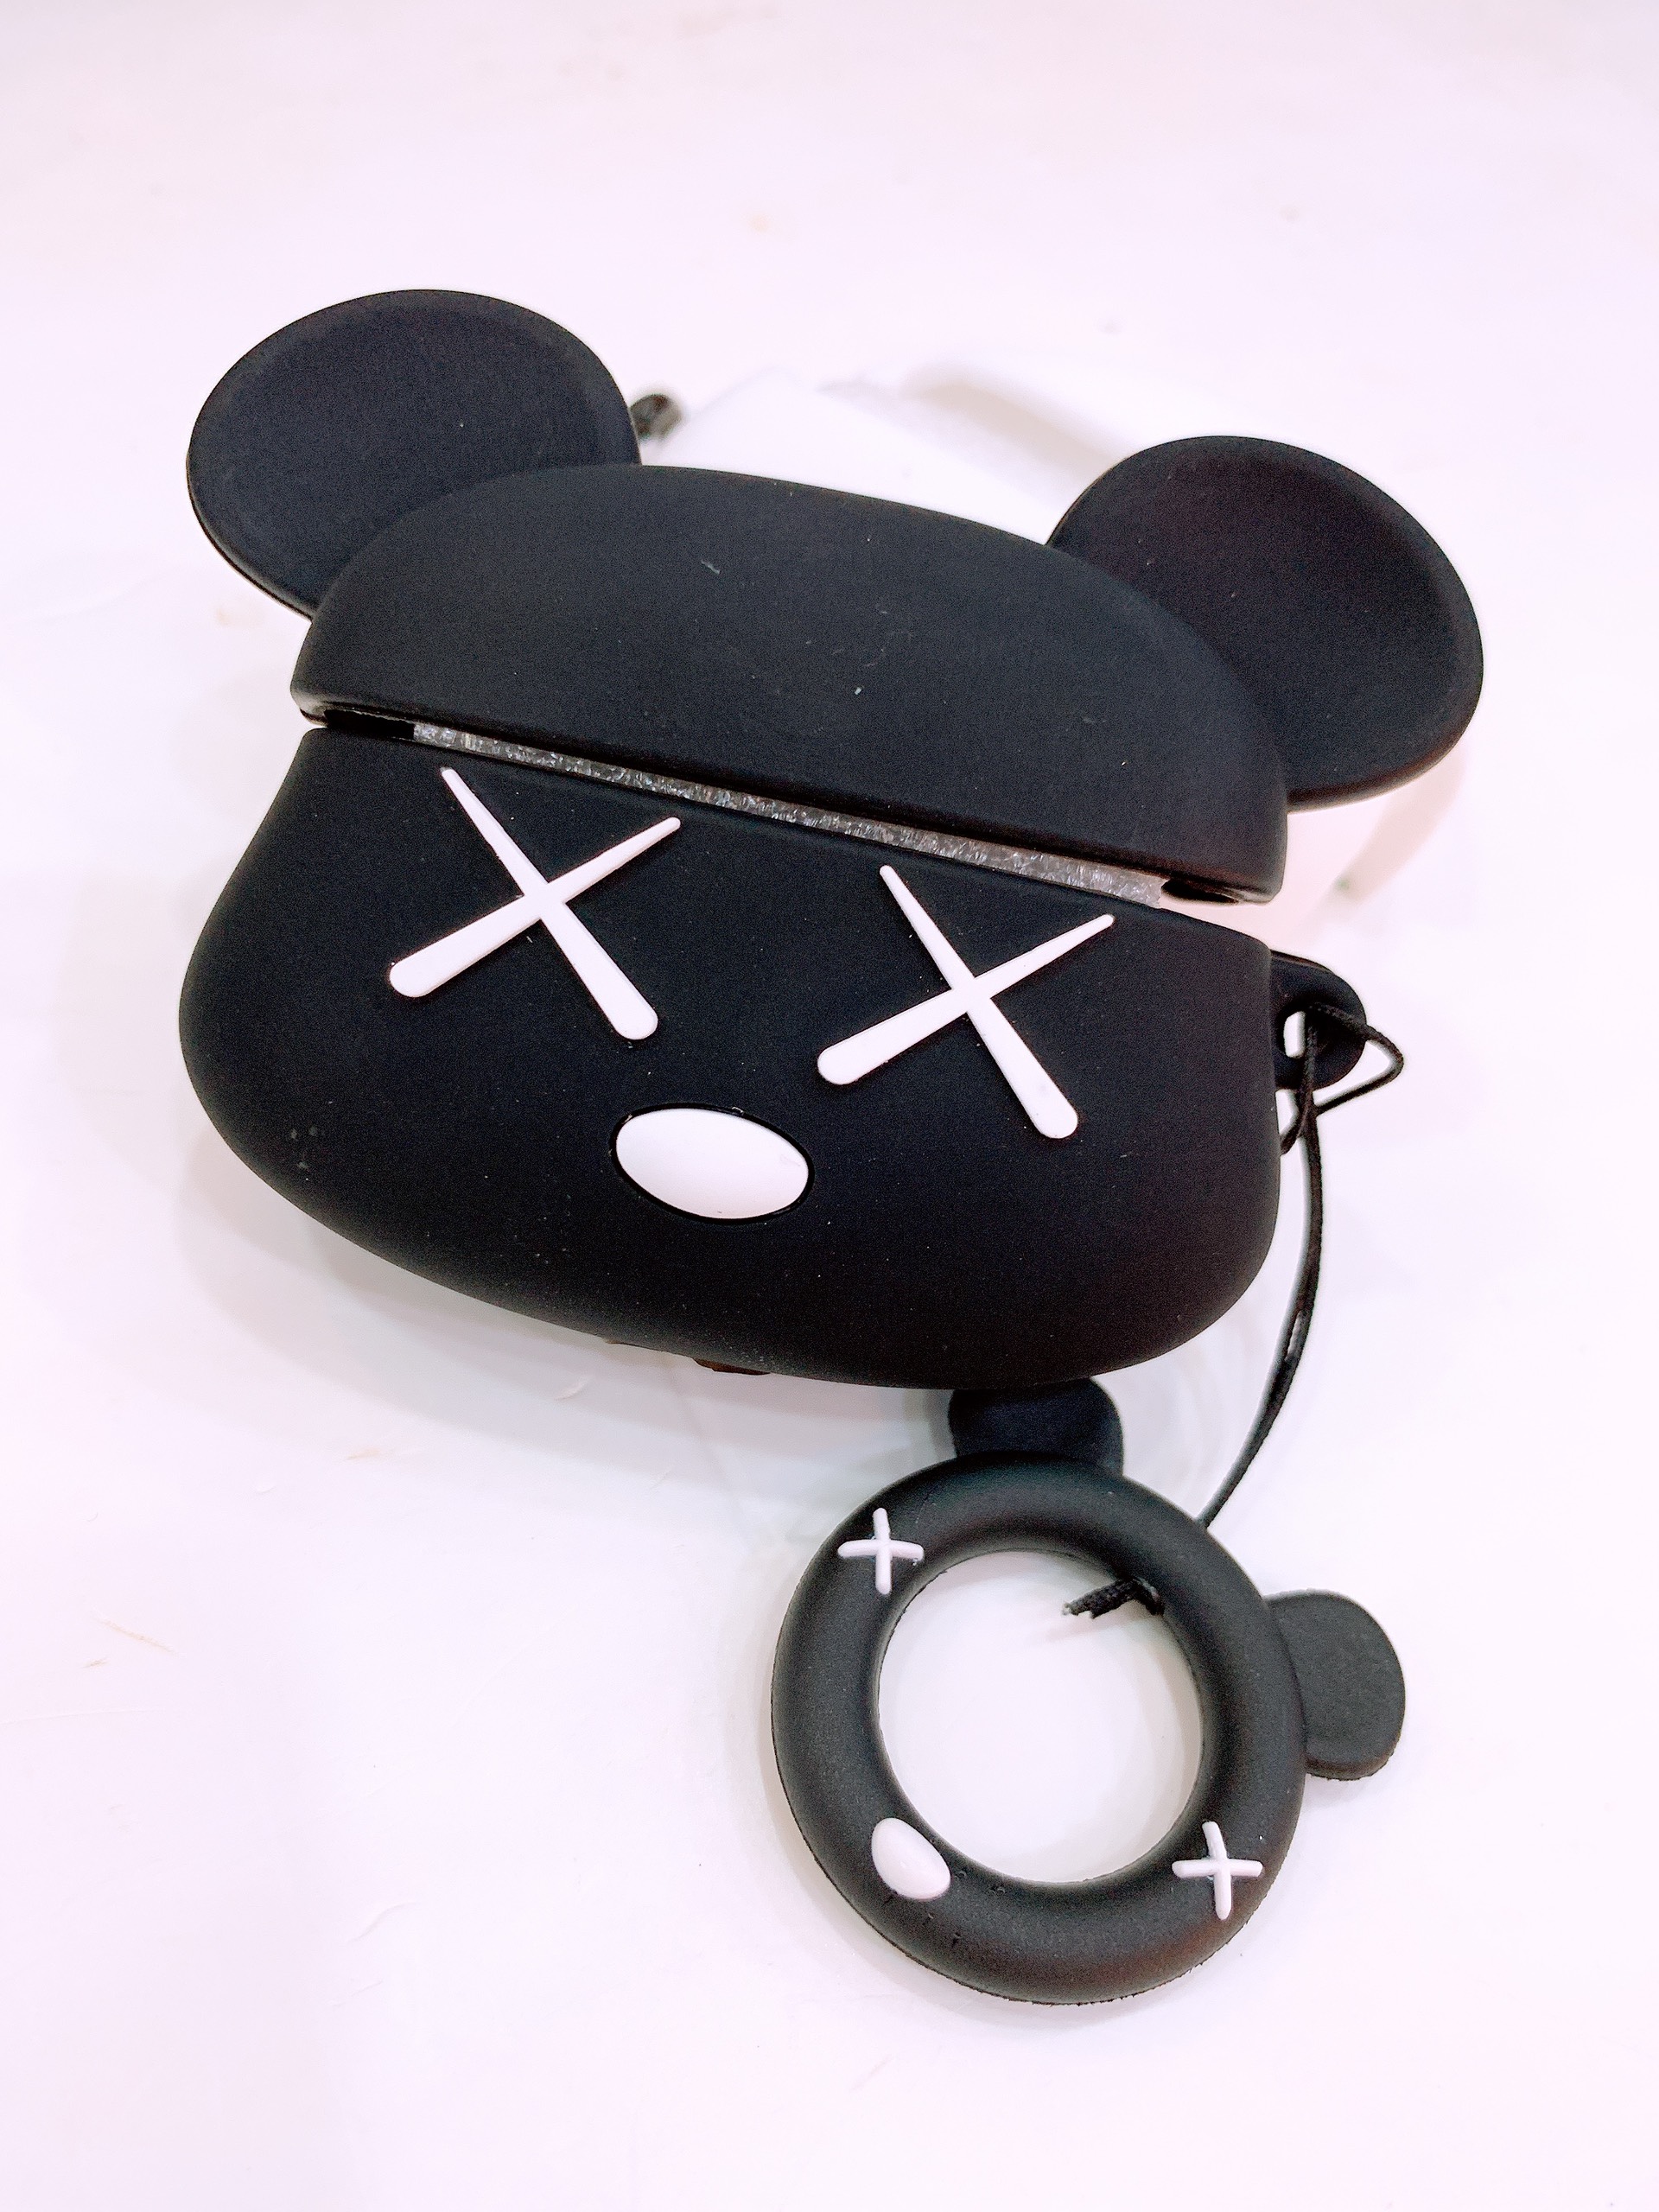 Bao Đựng Tai Nghe Airpods Pro hình bear brick đen siêu ngầu, chất liệu Silicone mềm, có kèm theo móc treo dễ thương, thiết kế mỏng nhẹ, ôm khít tai nghe